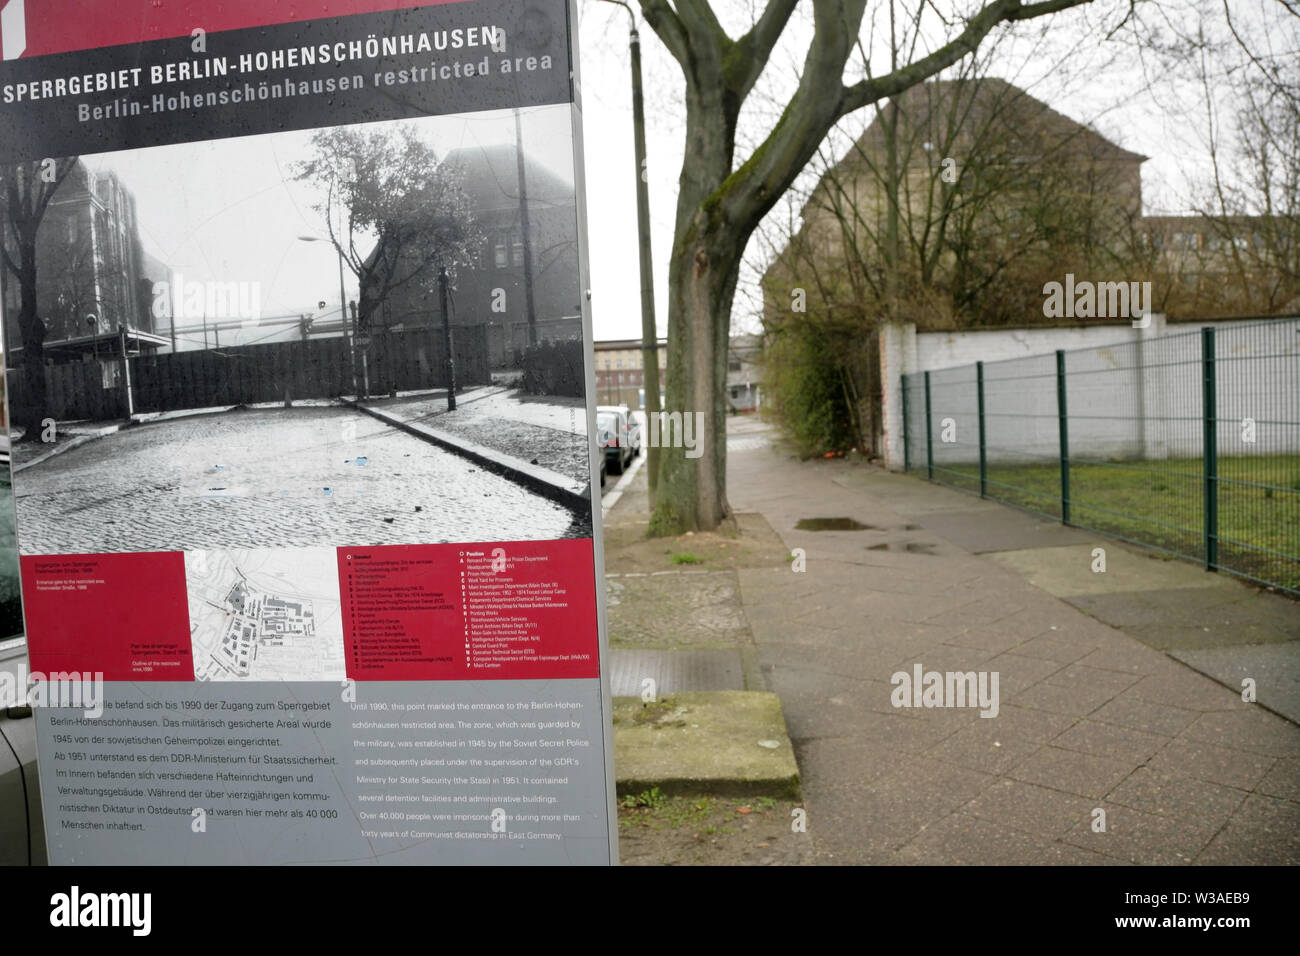 Informationen Panel an den Umfang der eingeschränkten Bereich der Stasi HQ Gebäude komplex, Hohenschonhausen, Berlin, Deutschland. Stockfoto